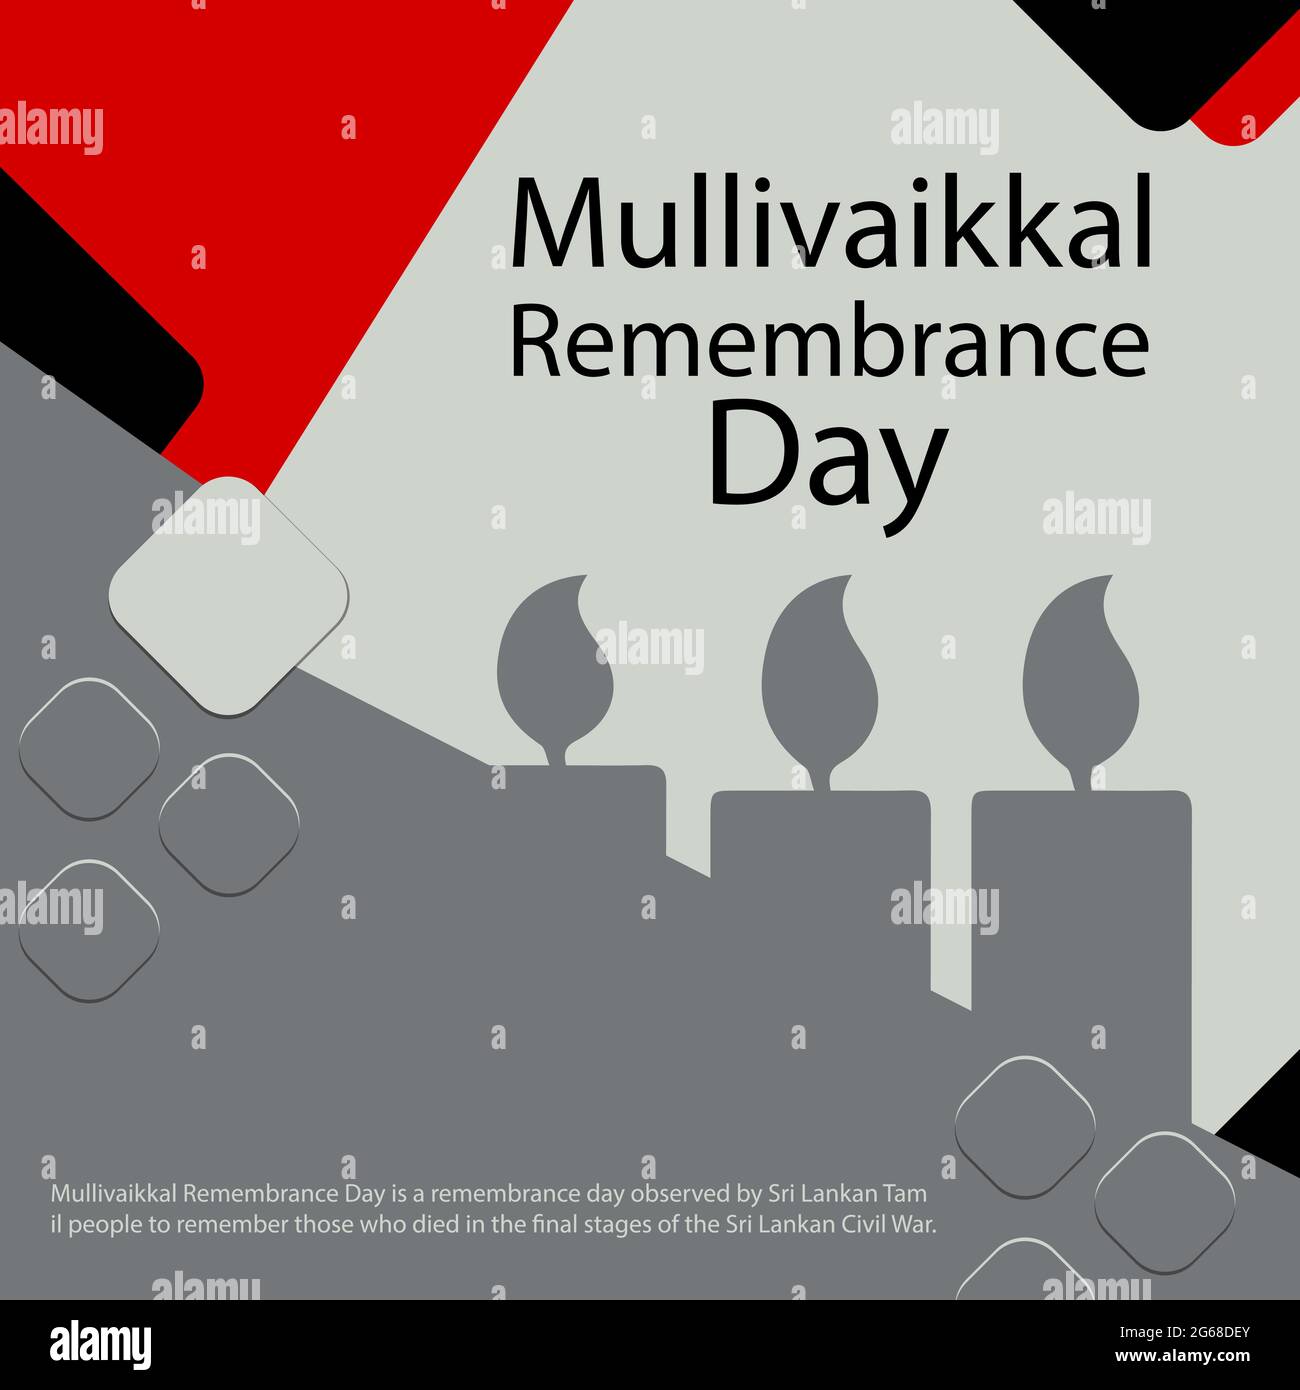 Der Mullivaikkal Remembrance Day ist ein Gedenktag, der von den Tamilen Sri Lankas begangen wird, um an diejenigen zu erinnern, die in der Endphase Sri Lankas starben Stock Vektor